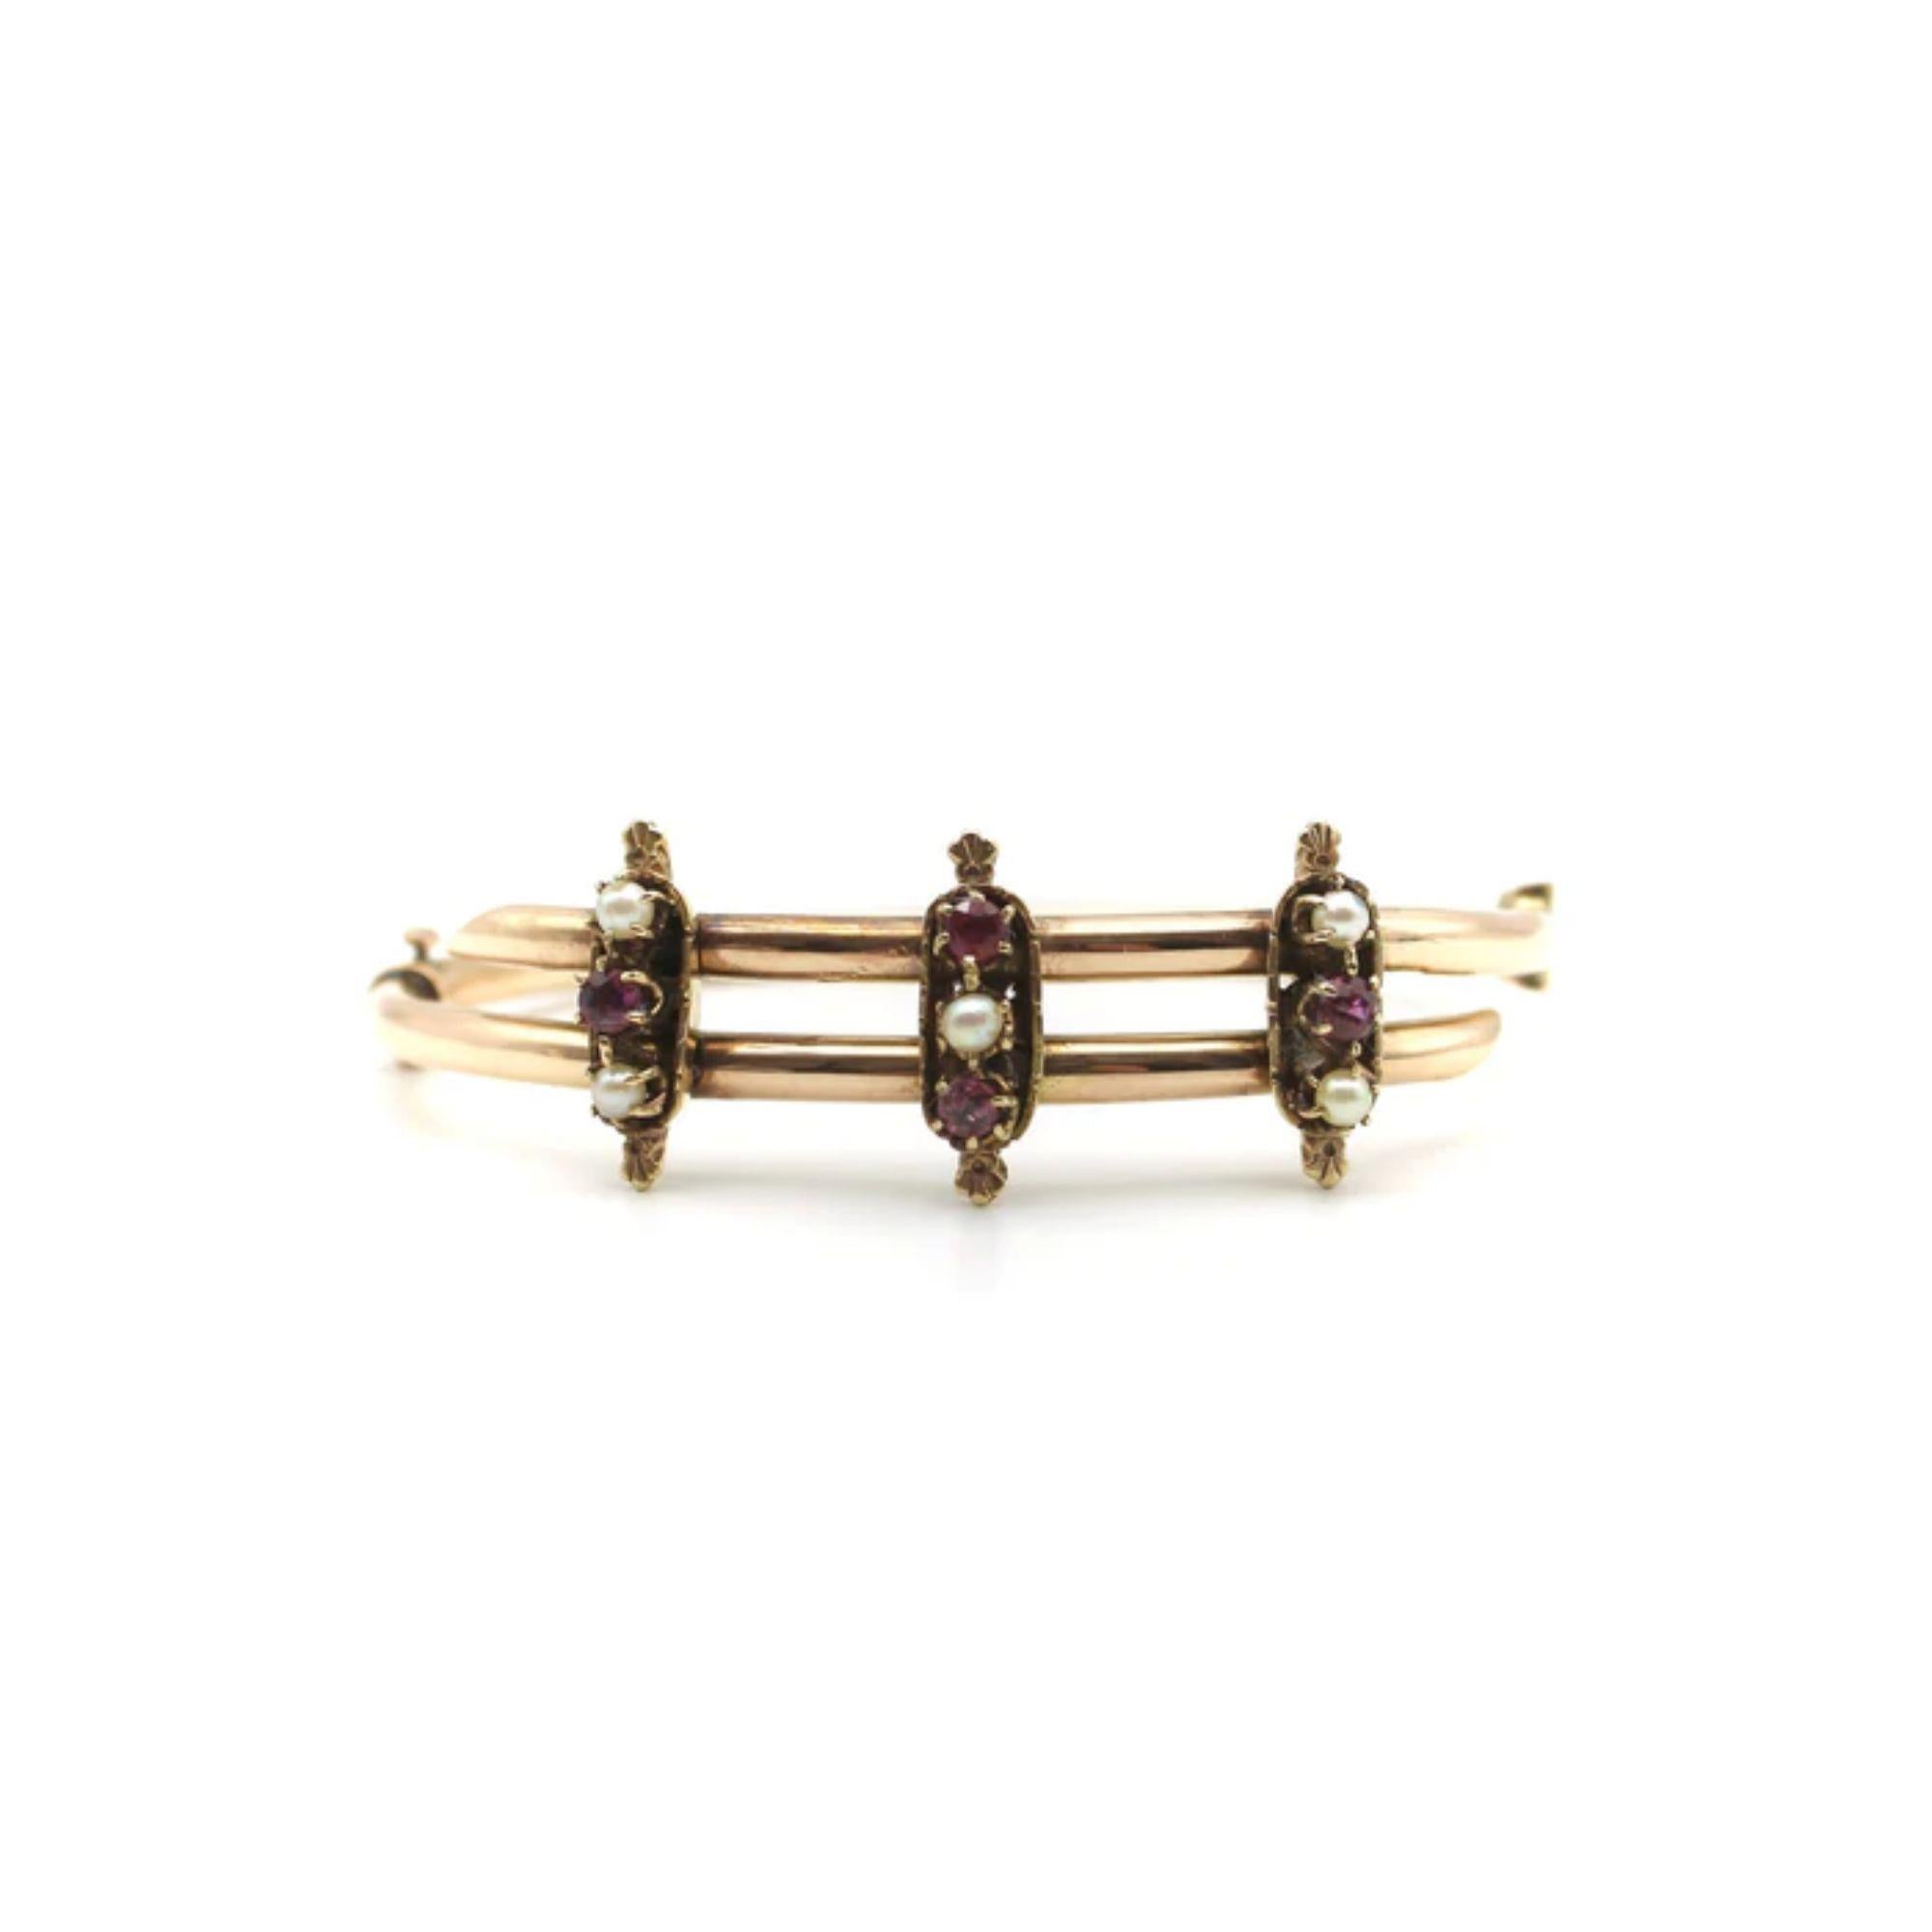 14K Rose Gold Etruscan Revival, Perle, und Rubin Armband, um 1880's
 
CIRCA aus den 1880er Jahren: Dieses wunderschöne Armband aus 14 Karat Roségold ist mit Rubinen und Perlen verziert. Die beiden Enden des Armbands überkreuzen sich und werden durch